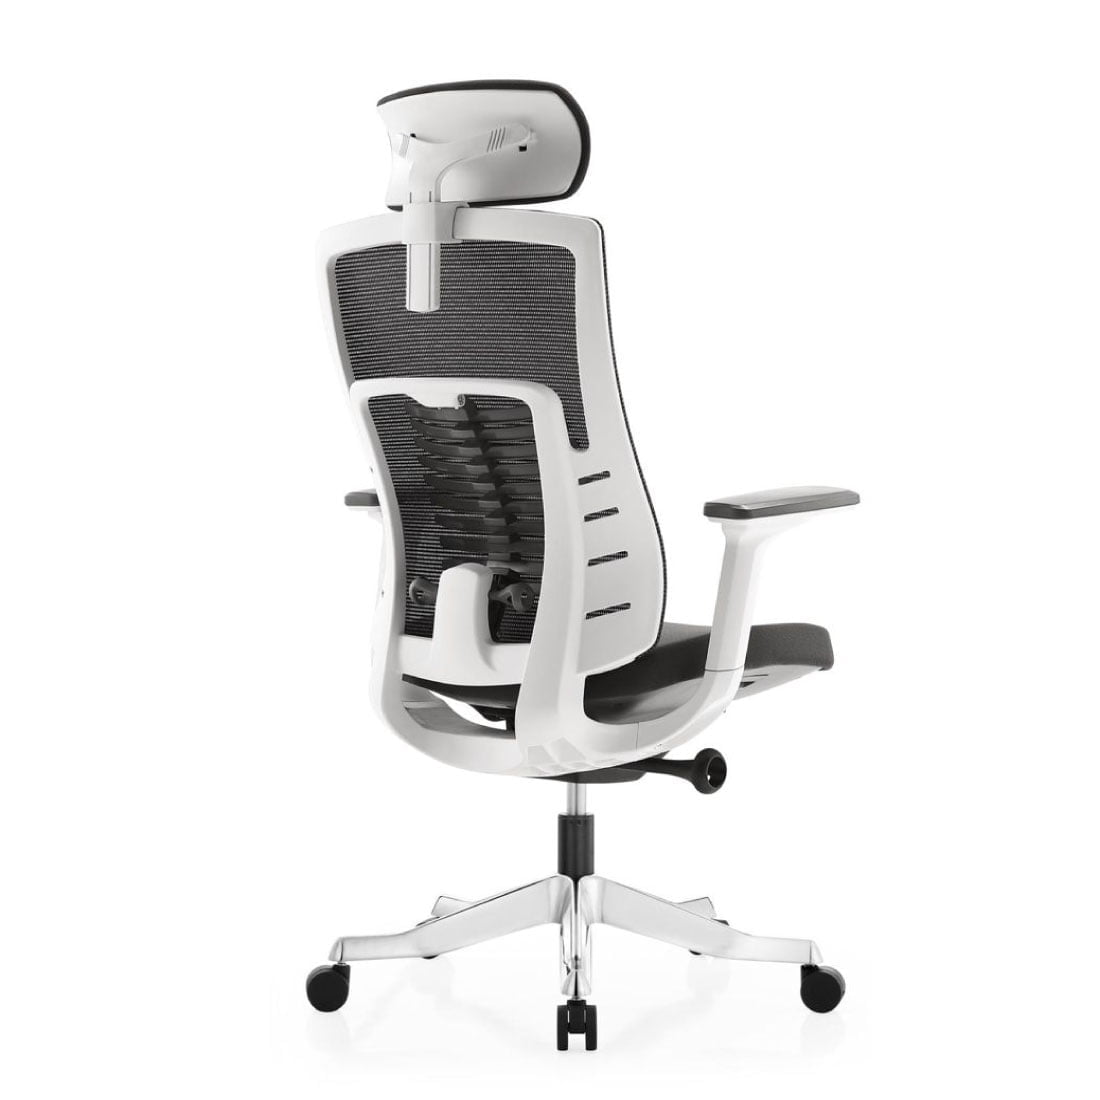 Inspire ergonomic white chair